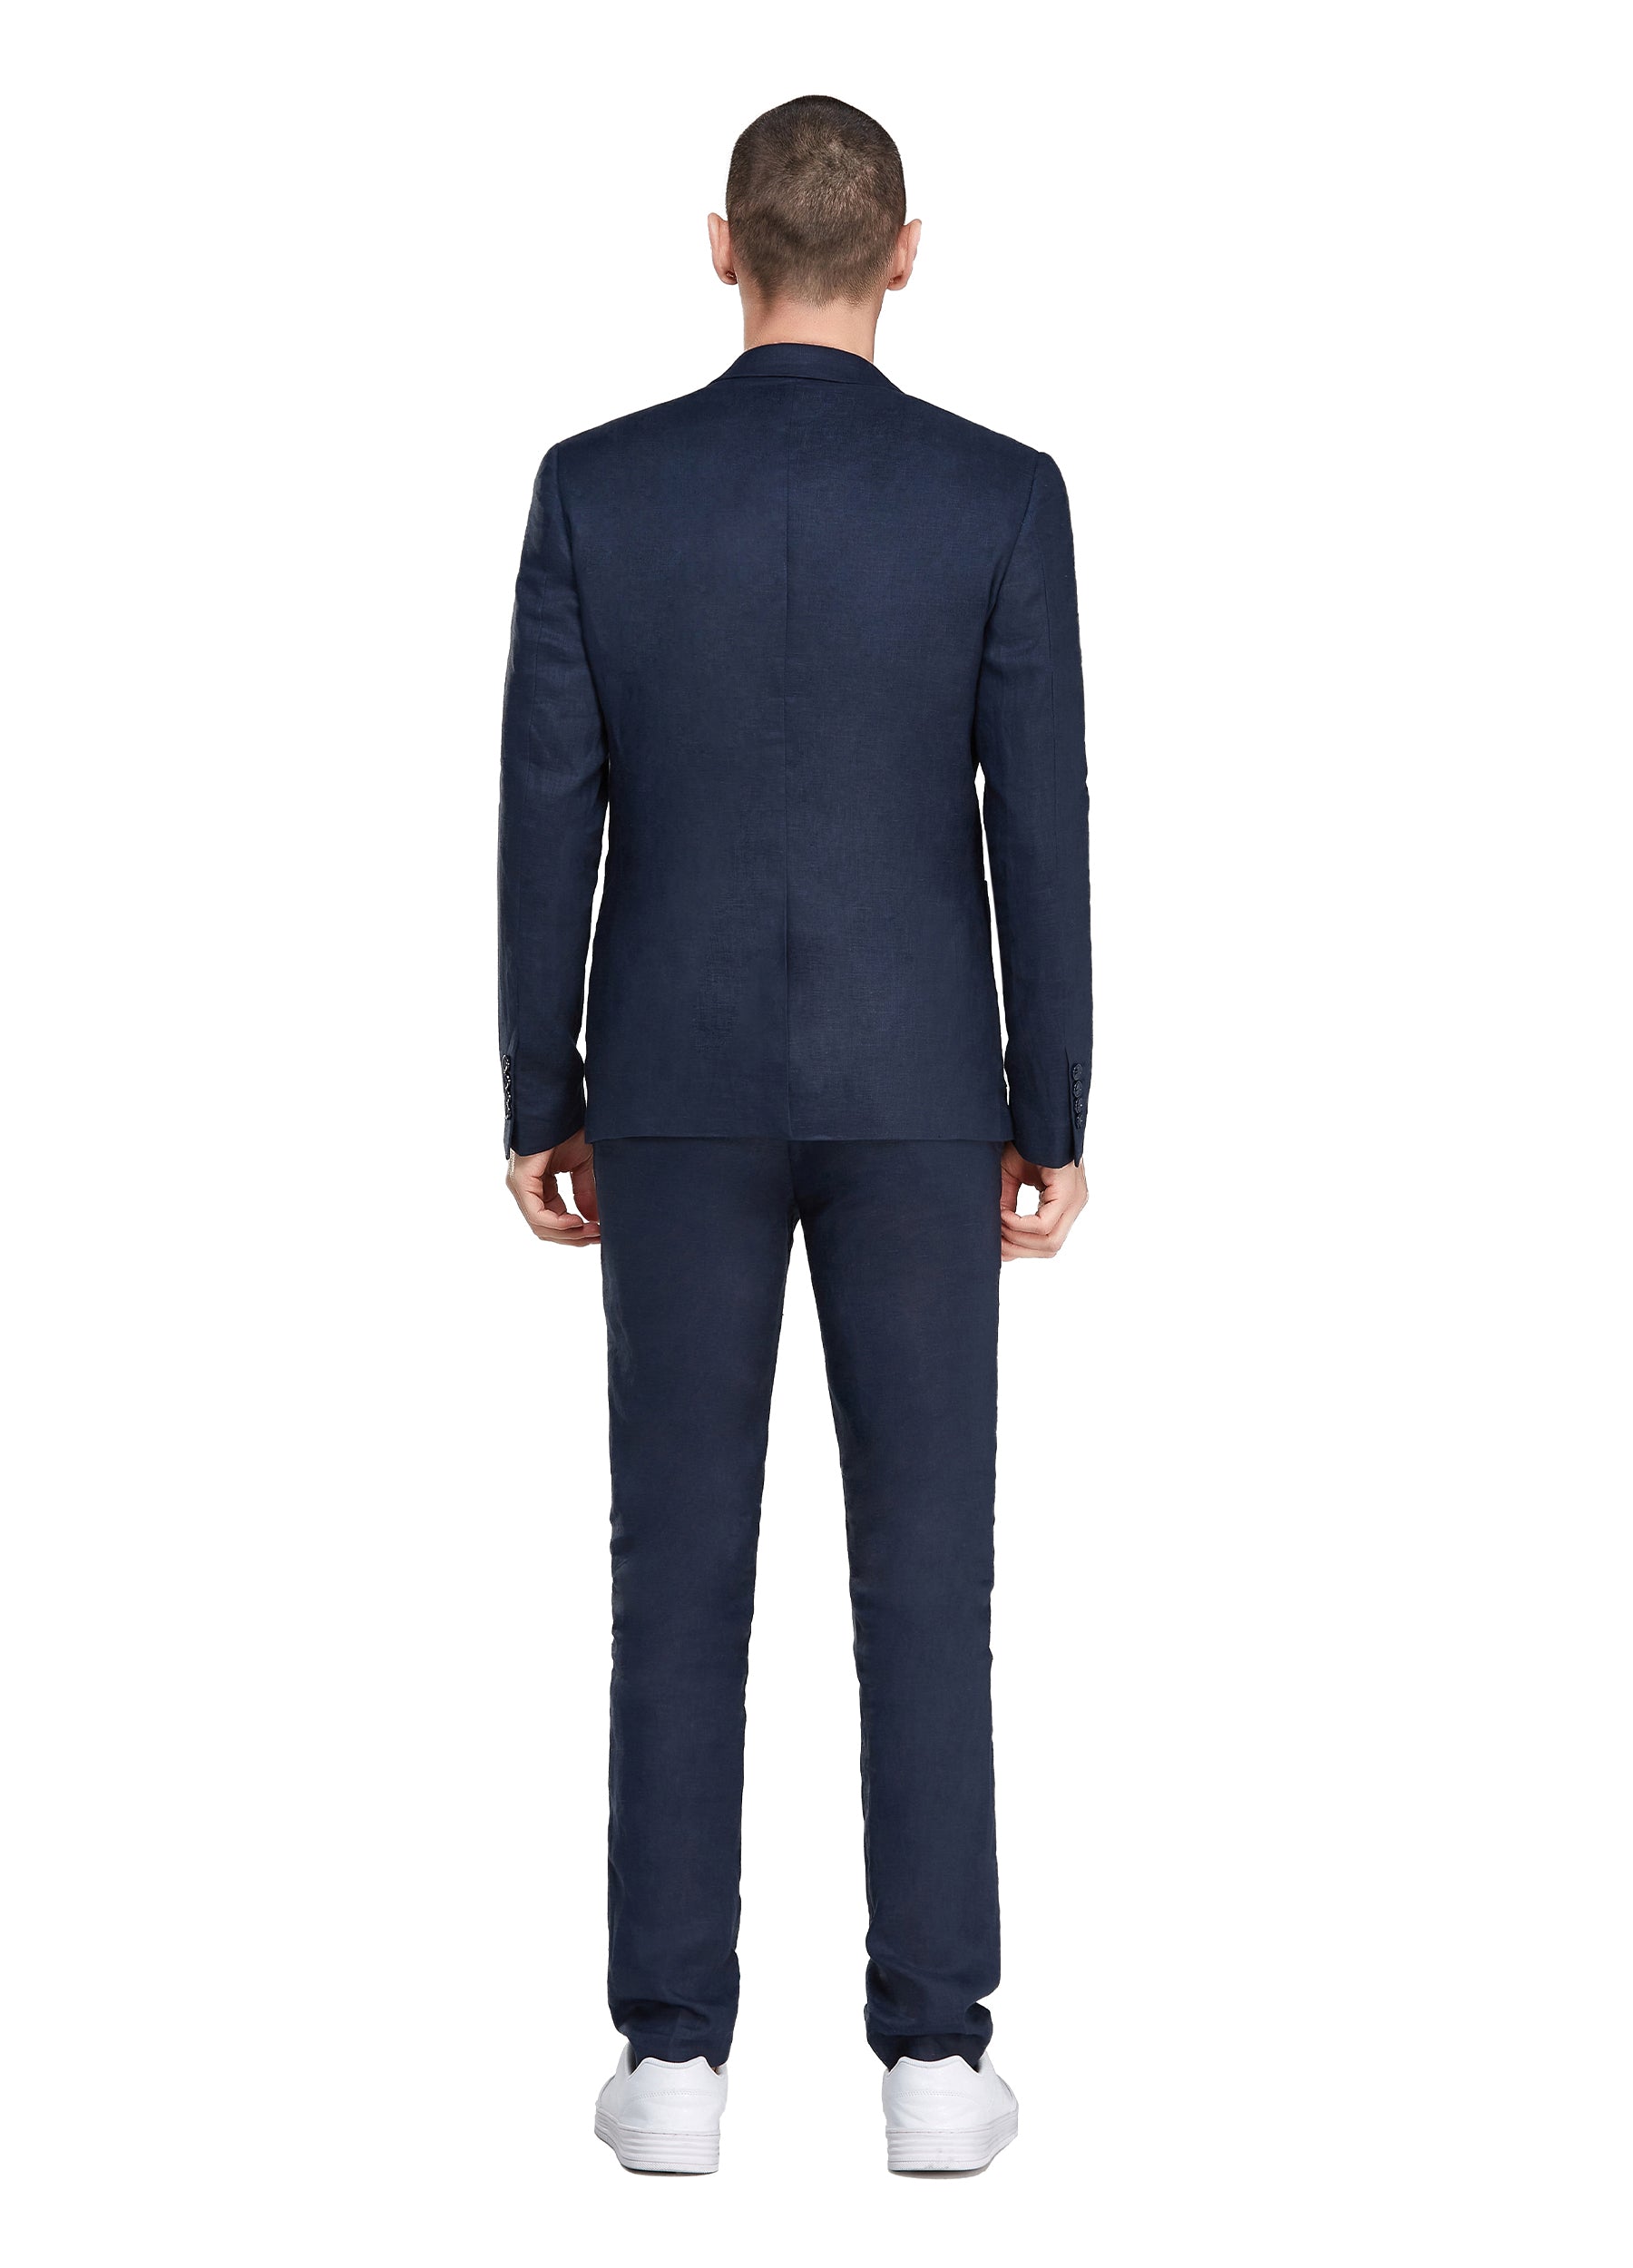 1PA1 Men's 100% Linen Navy Blue Jacket Trousers 2-Pieces Suit Set